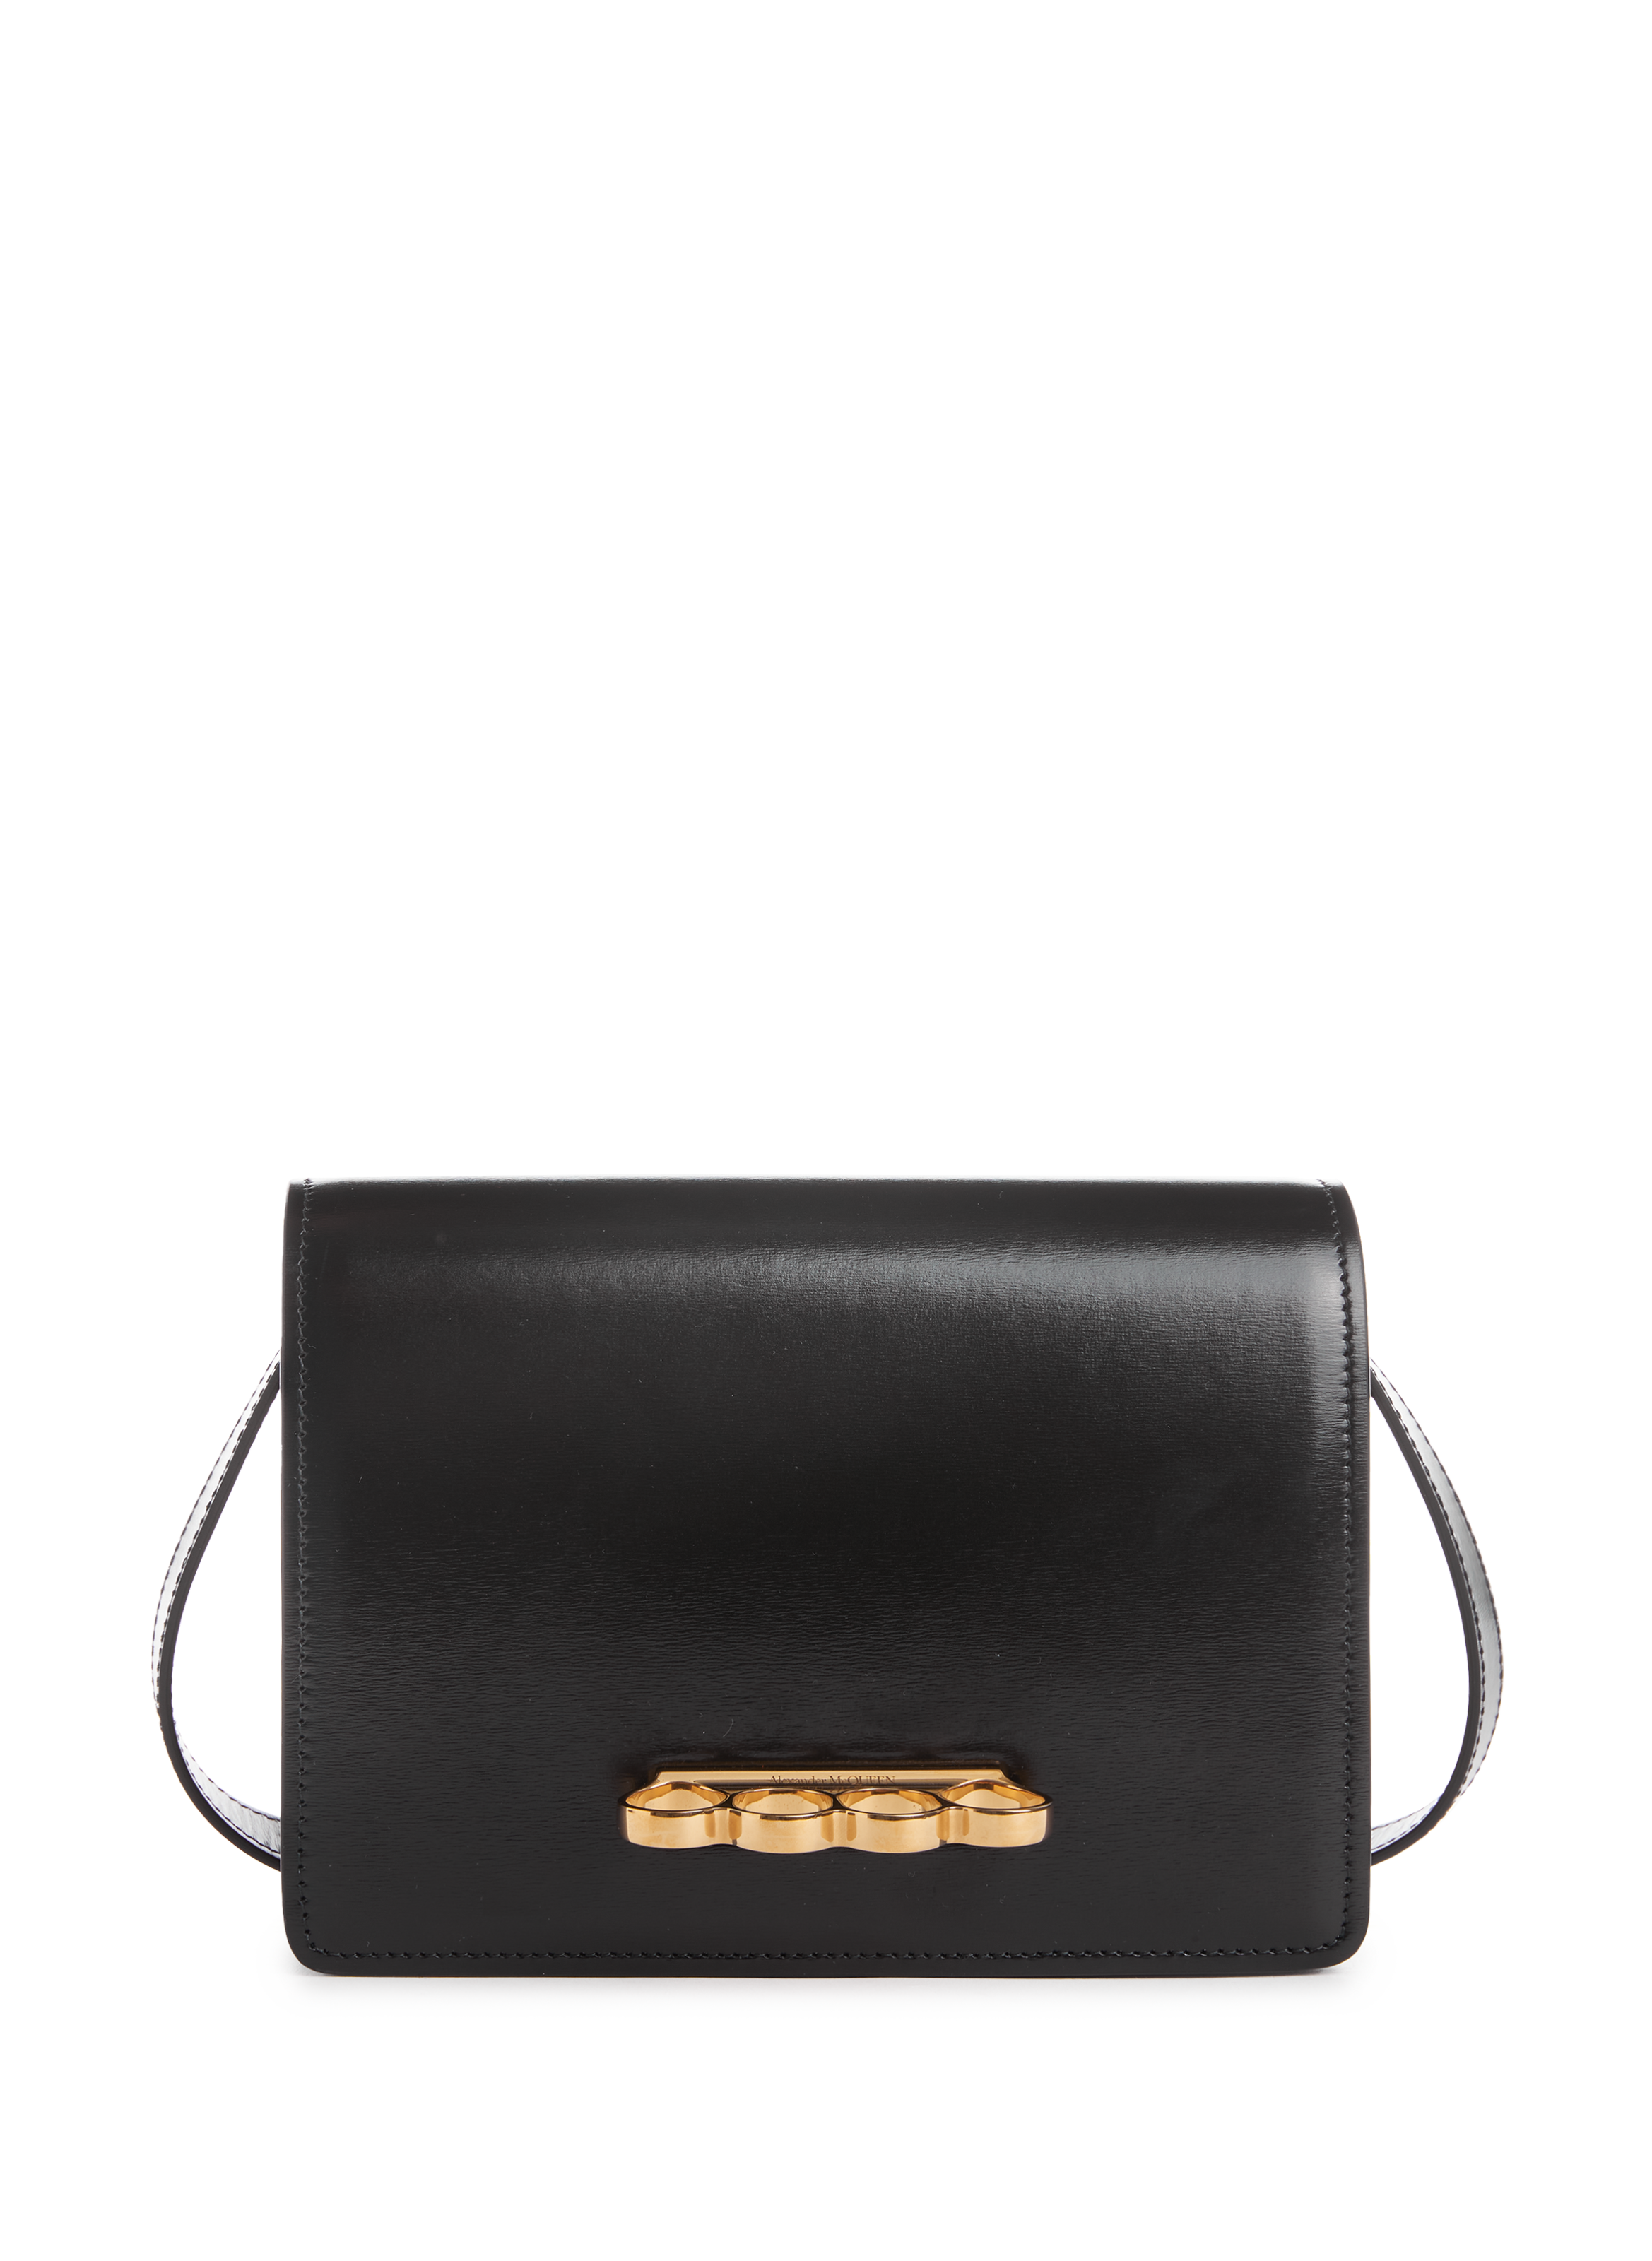 Alexander McQueen Black Bags & Handbags for Women | eBay